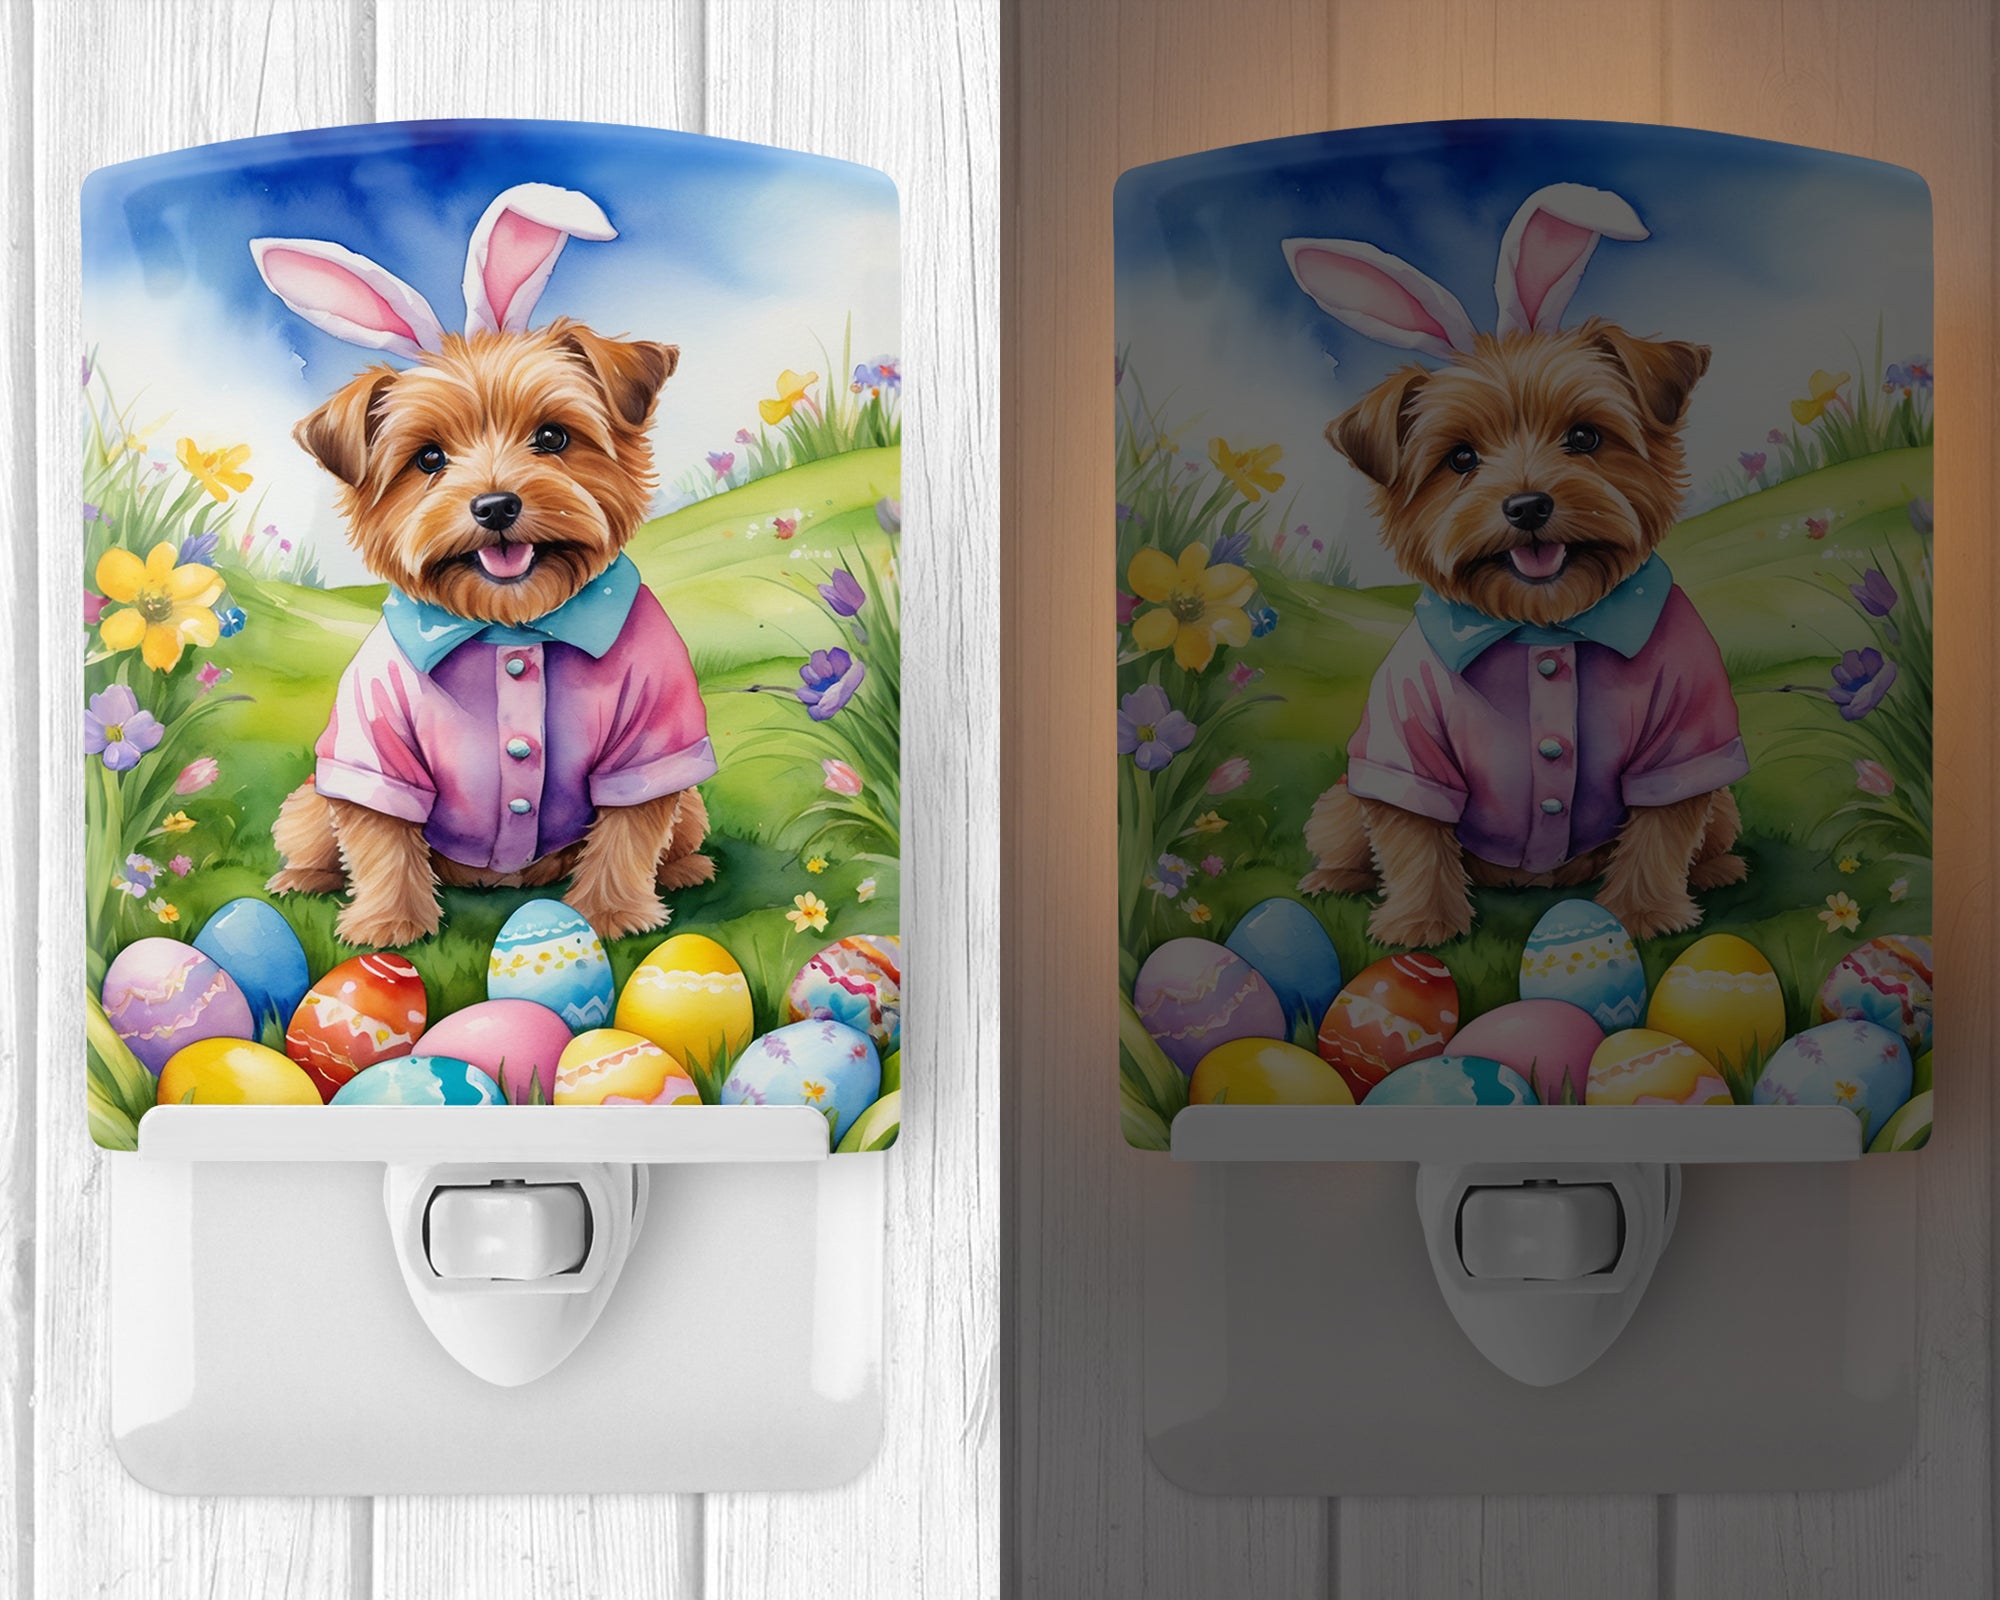 Buy this Norfolk Terrier Easter Egg Hunt Ceramic Night Light